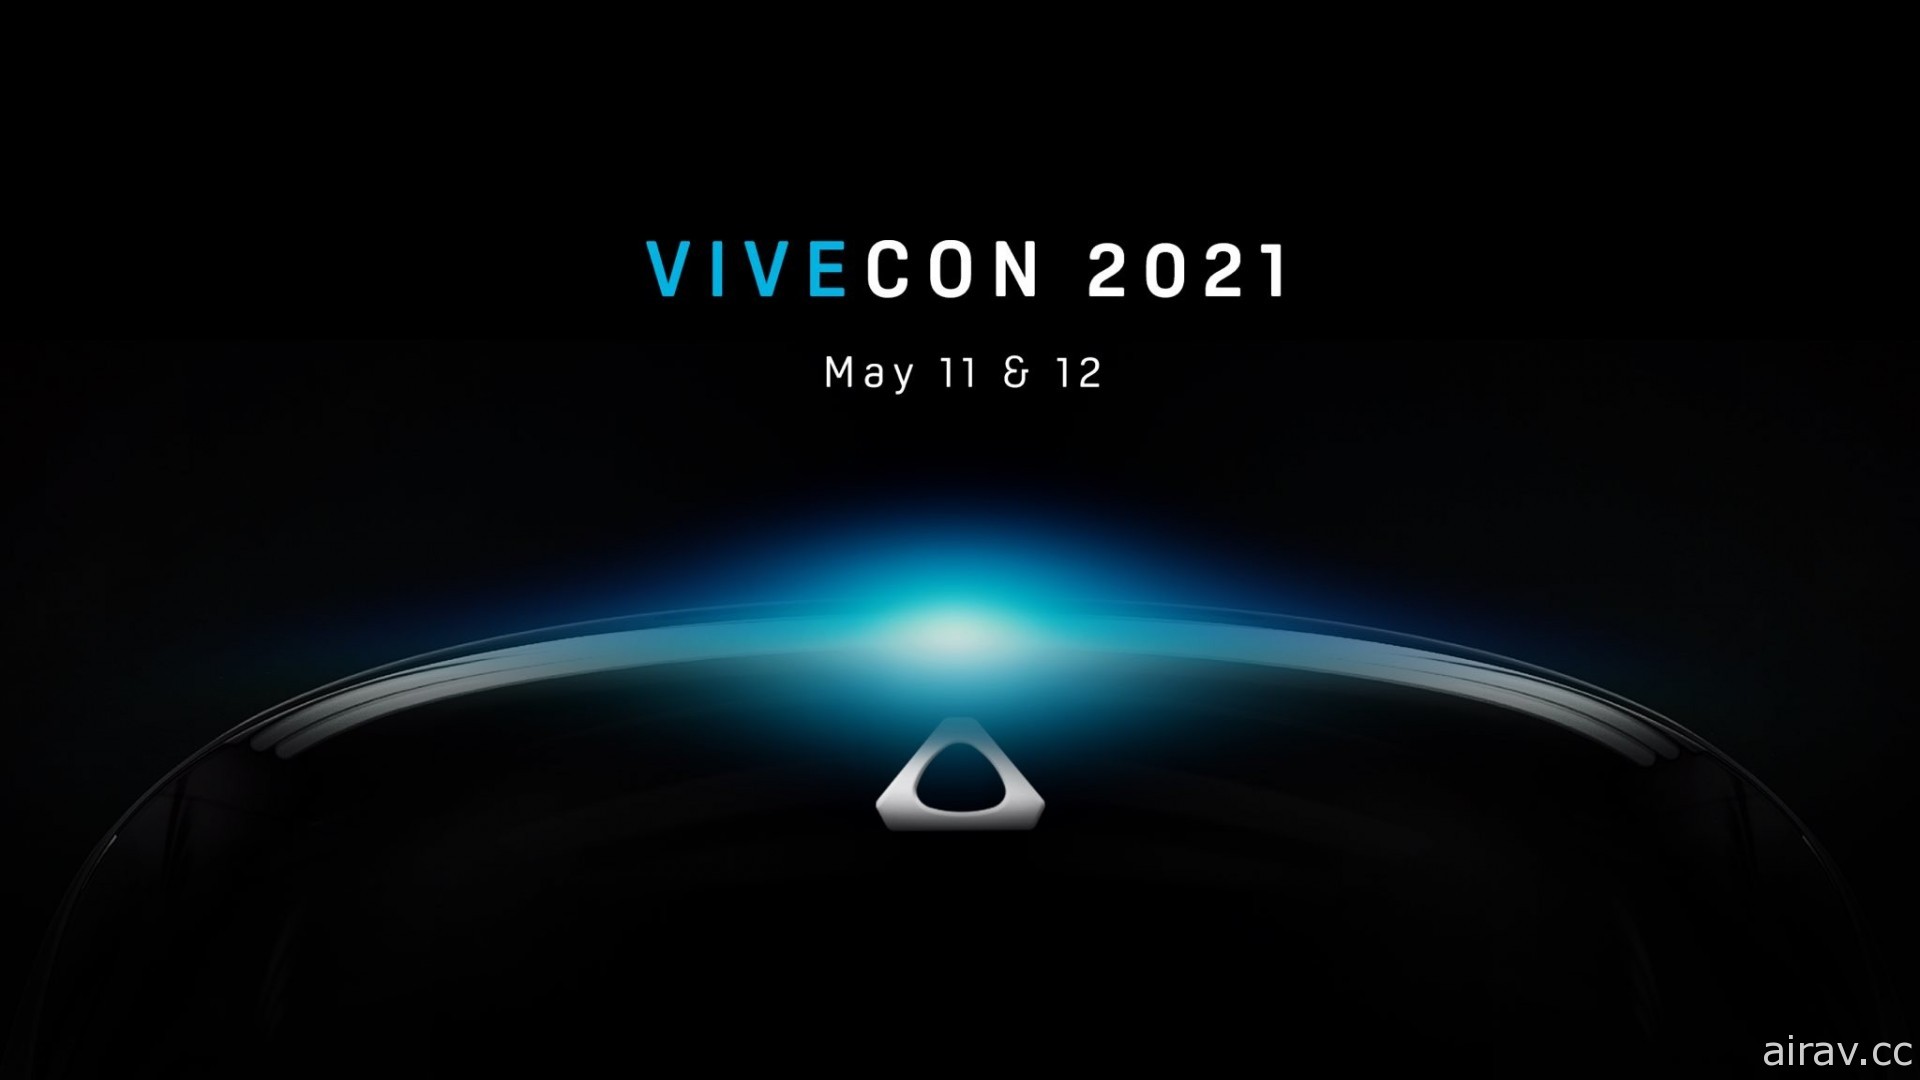 HTC 预告 5 月中举办“Vivncon 2021” 传将揭晓新 VR 装置？